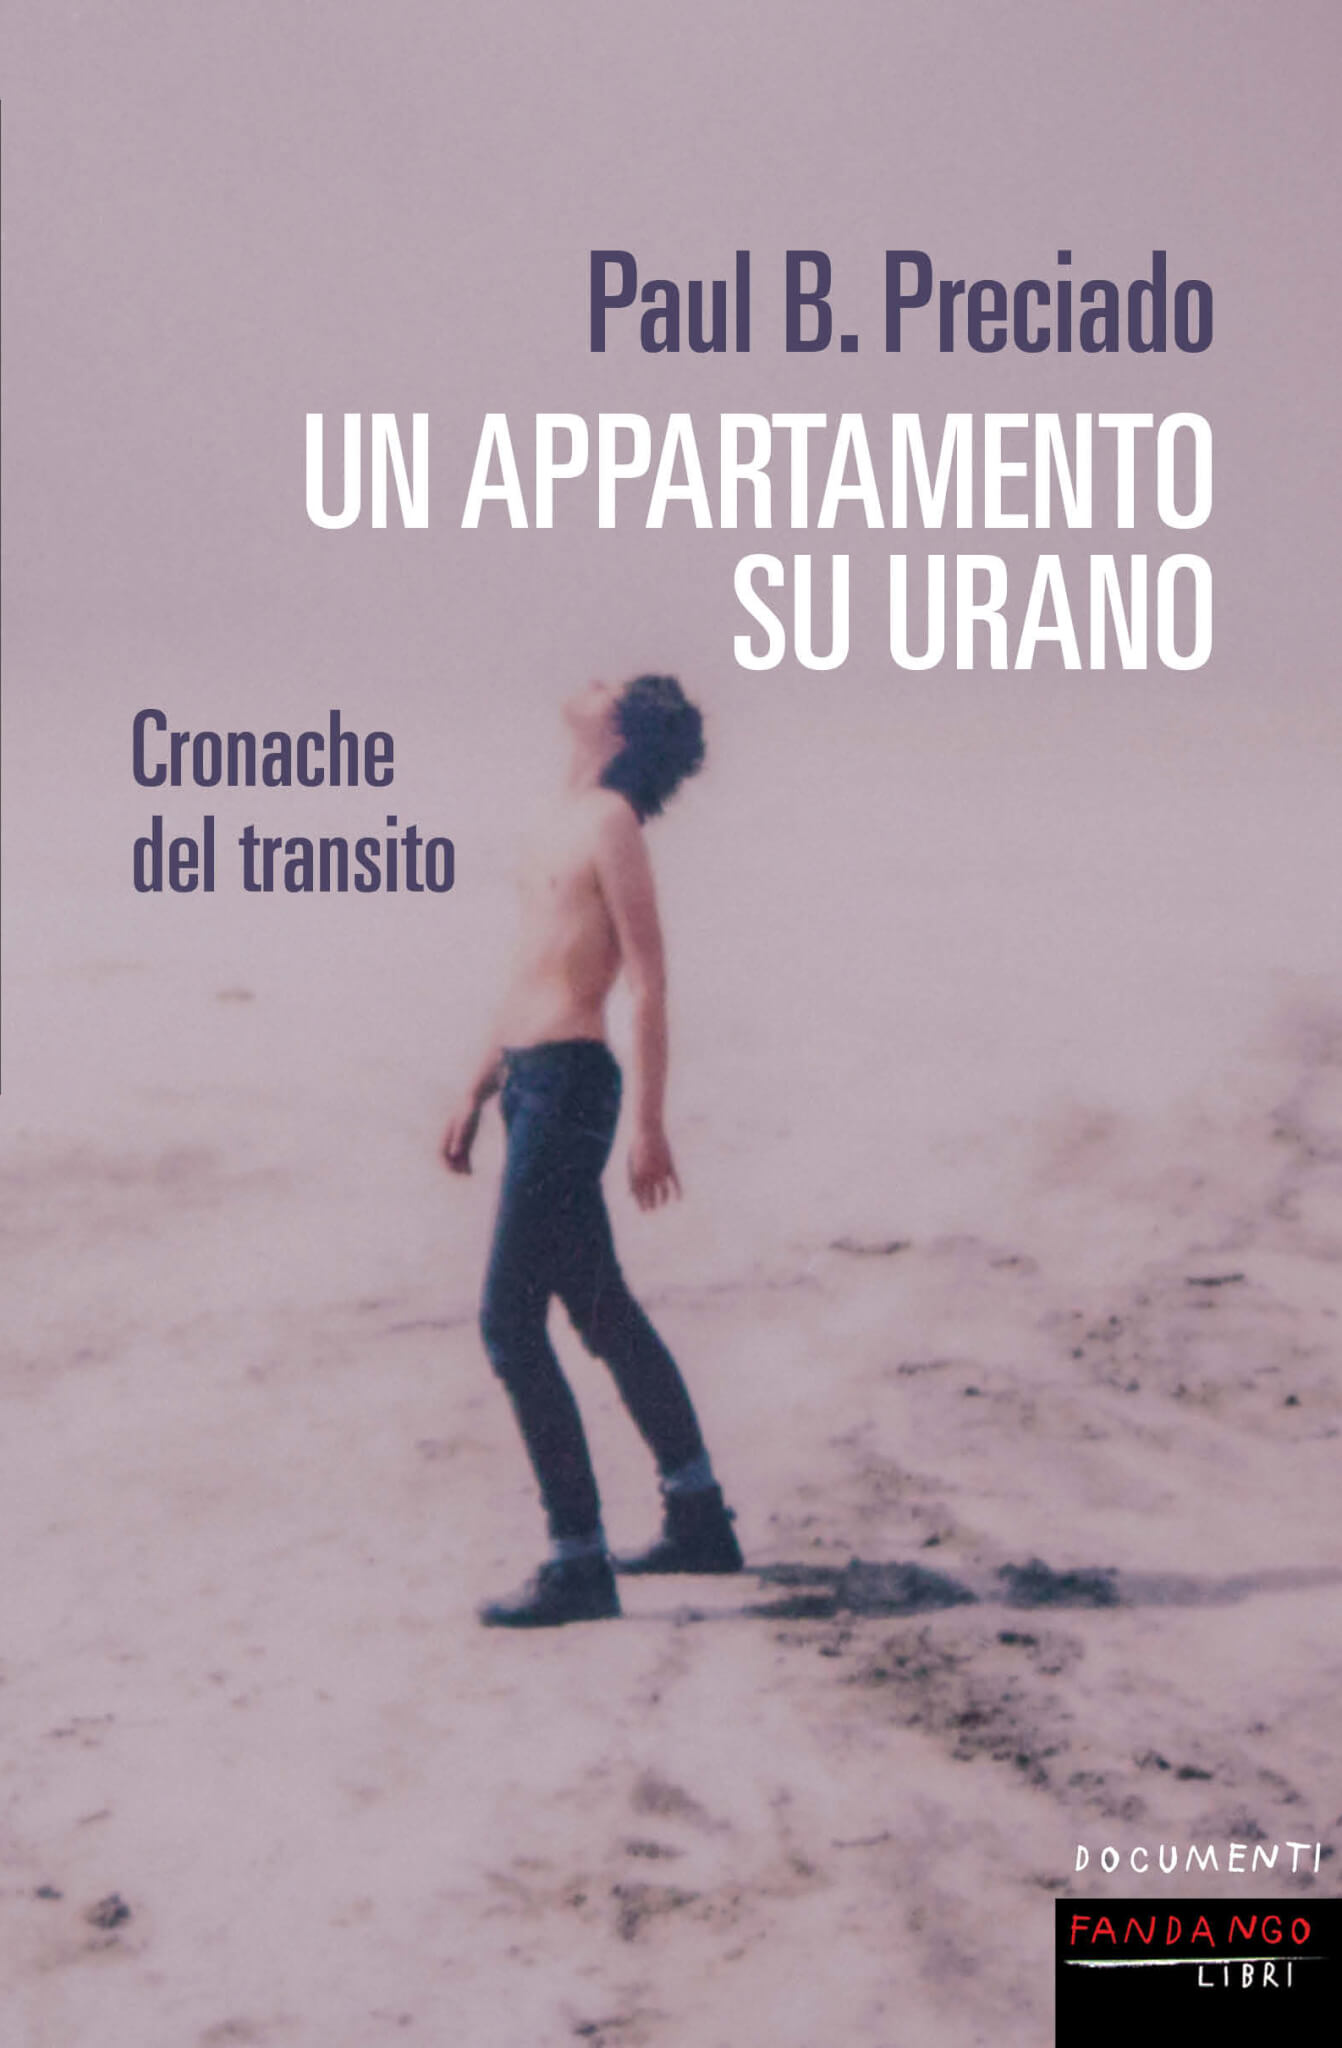 Un appartamento su Urano di Paul B. Preciado: Cronaca di una transizione di genere - Un appartamento su Urano di Paul B. Preciado copertina - Gay.it